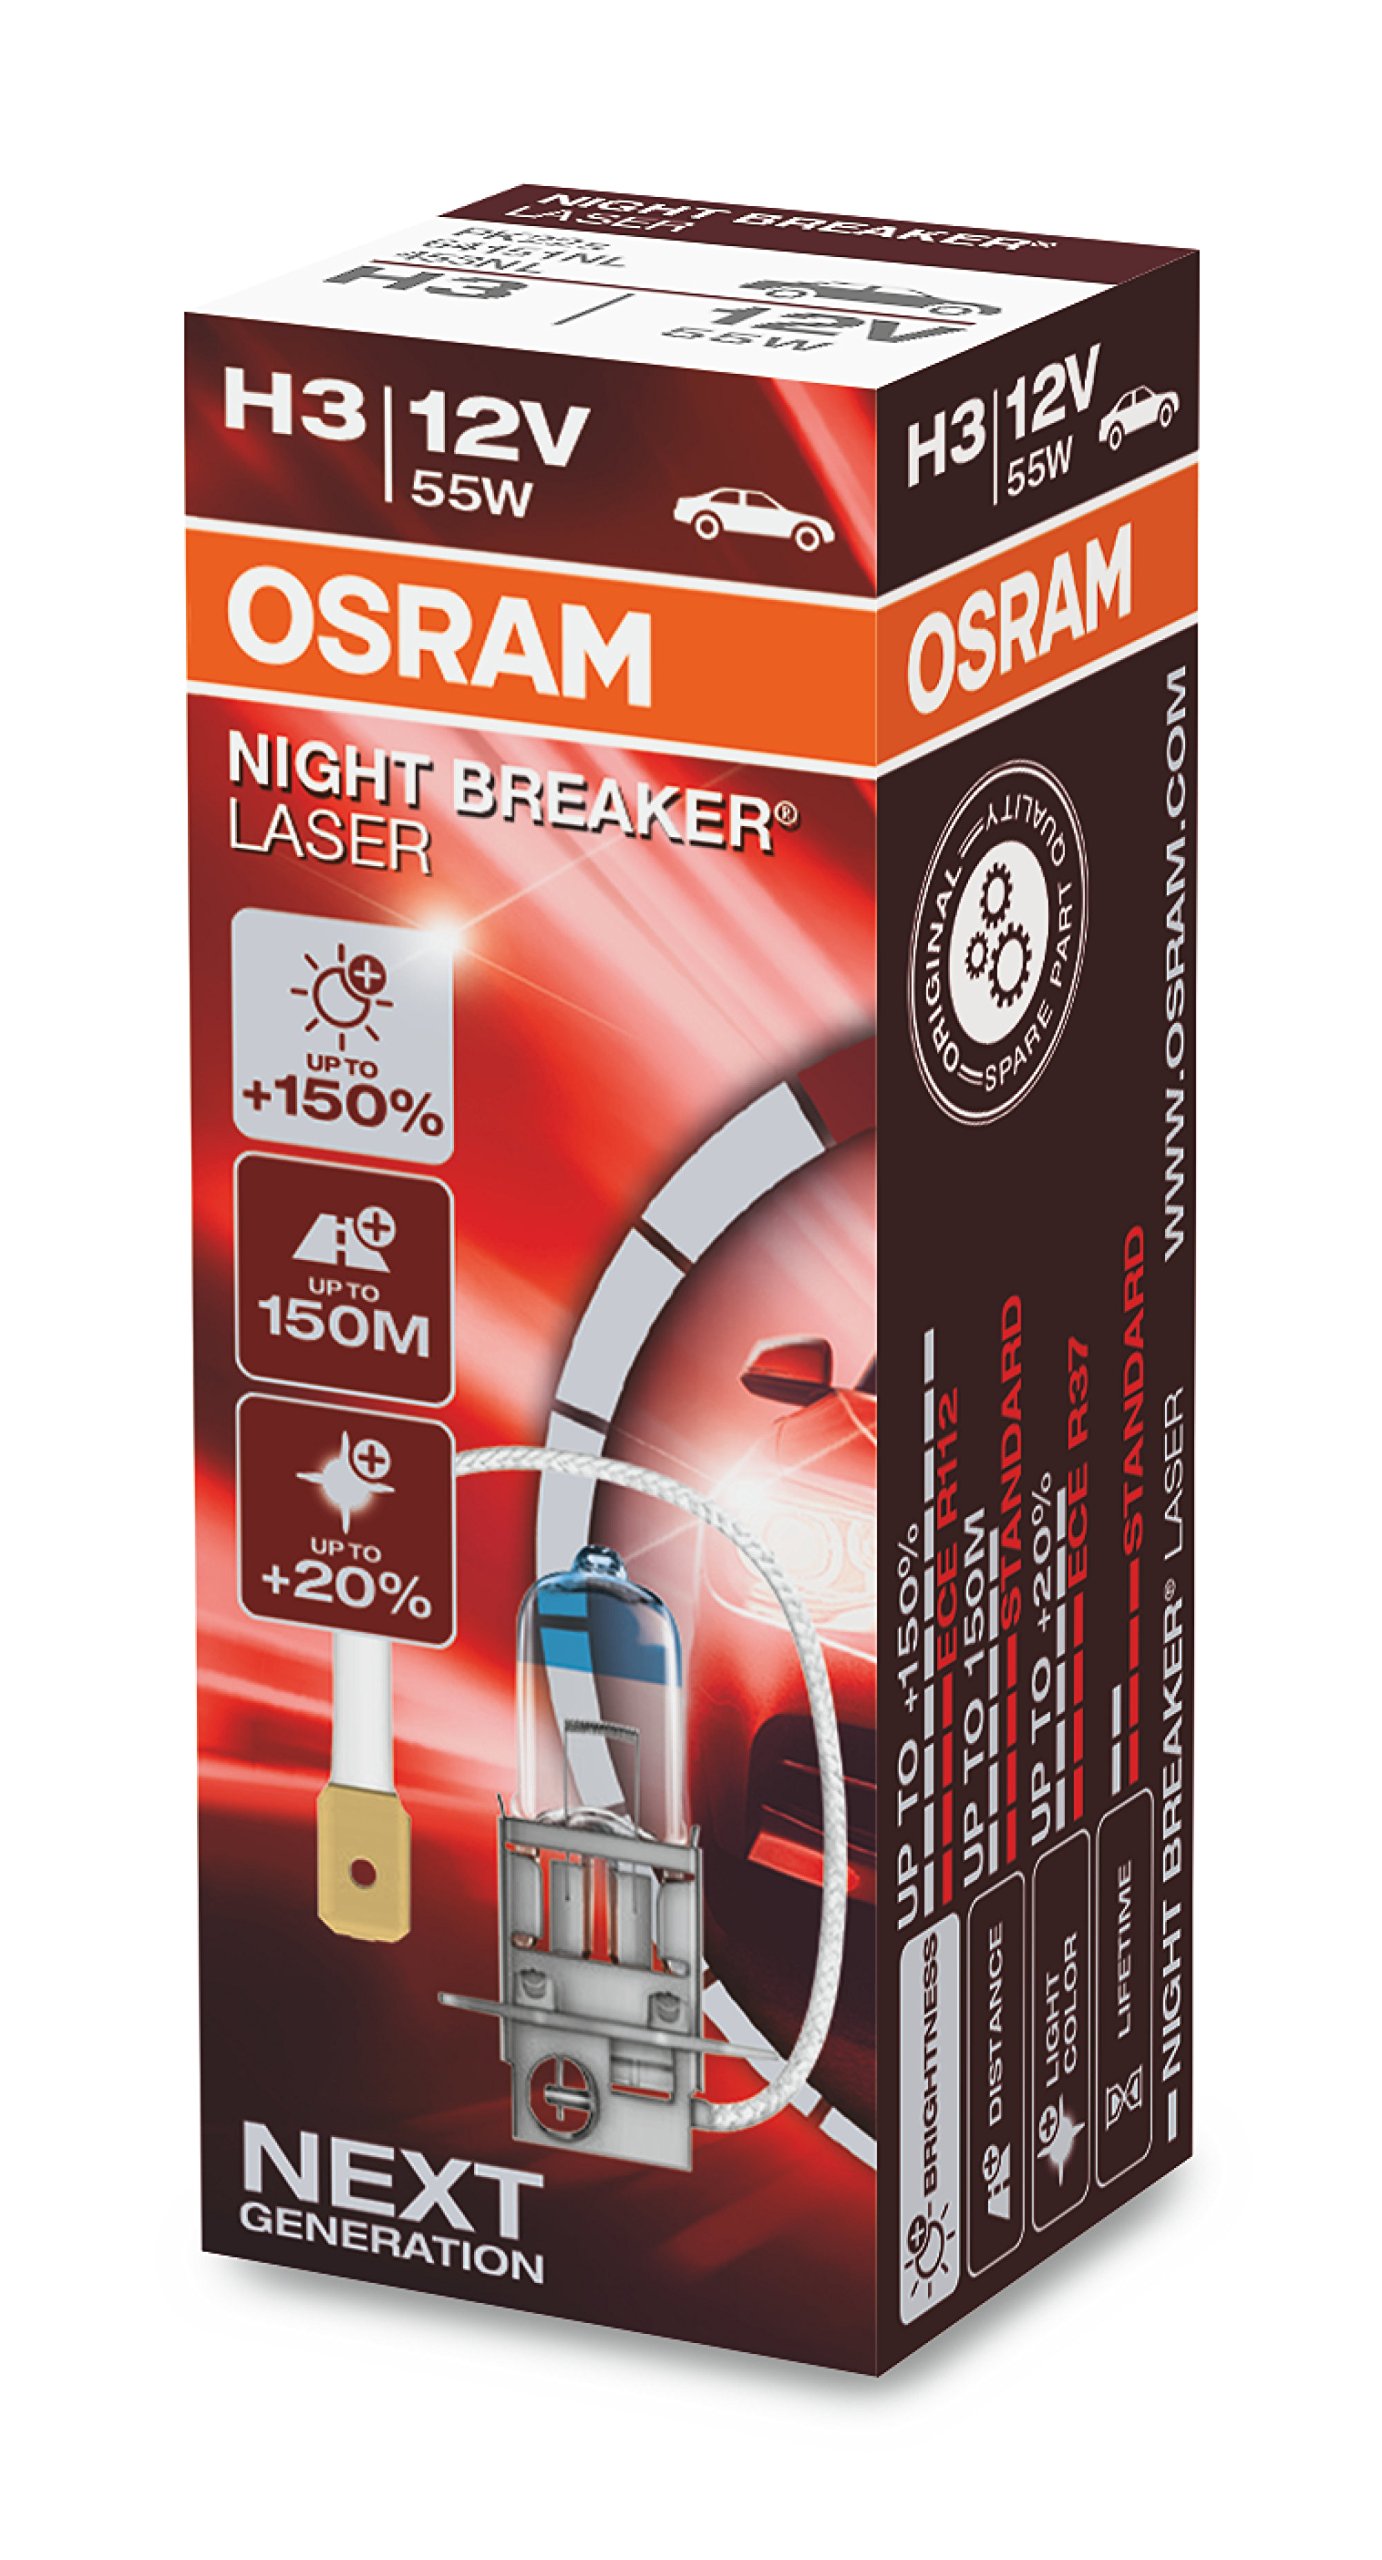 OSRAM NIGHT BREAKER LASER H3, +150% mehr Helligkeit, Halogen-Scheinwerferlampe, 64151NL, 12V PKW, Faltschachtel (1 Lampe) von Osram